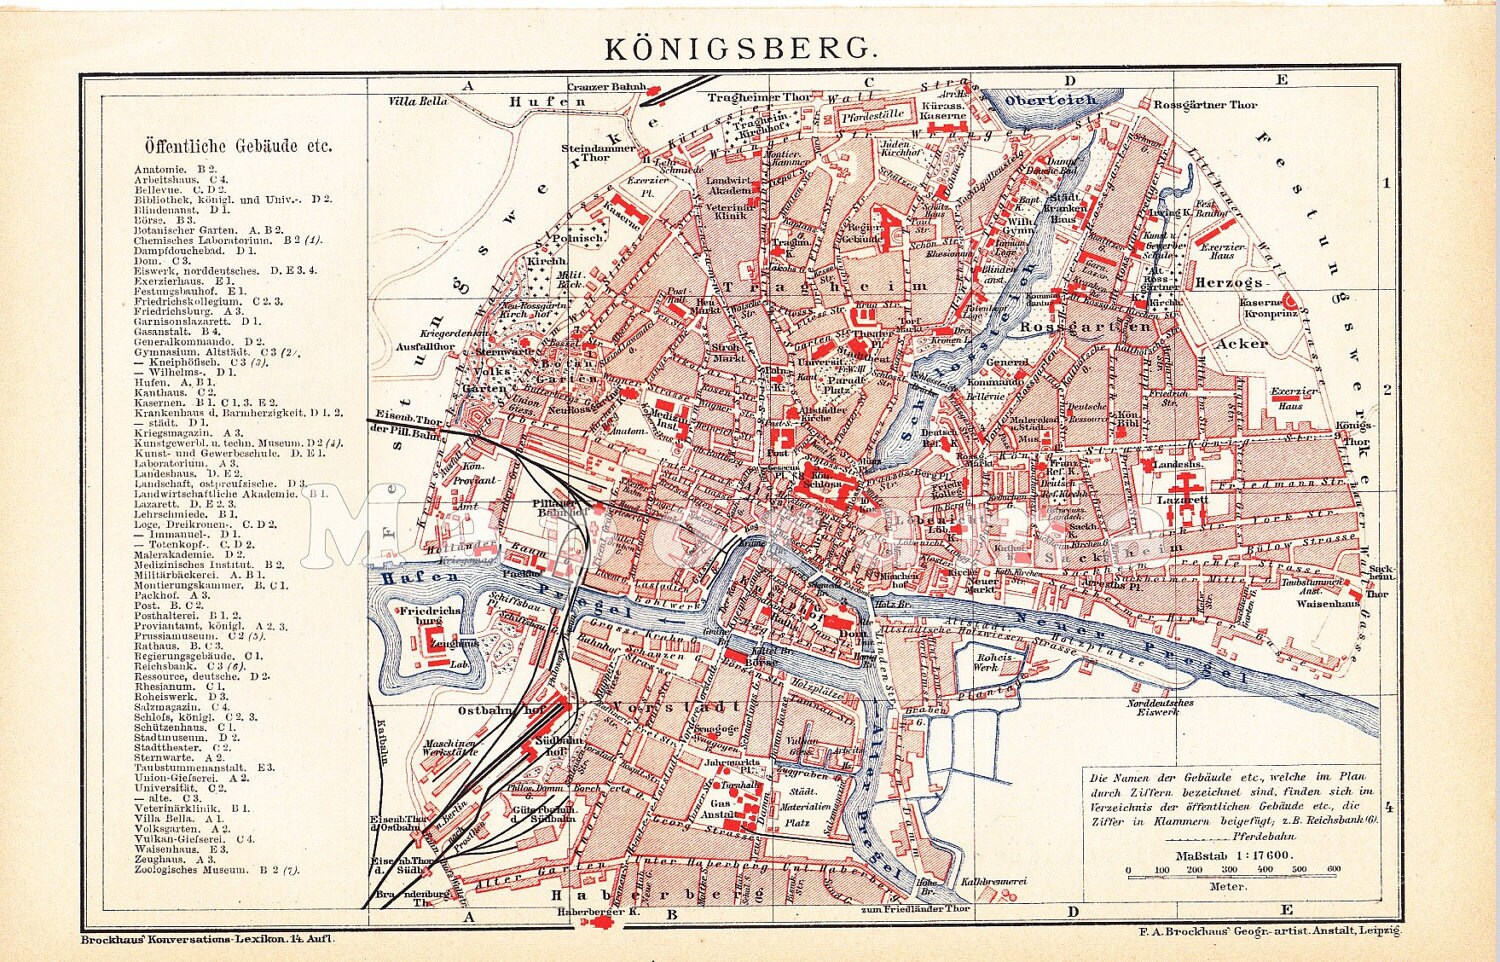 Подпишите на карте селение кунерсдорф и кенигсберг